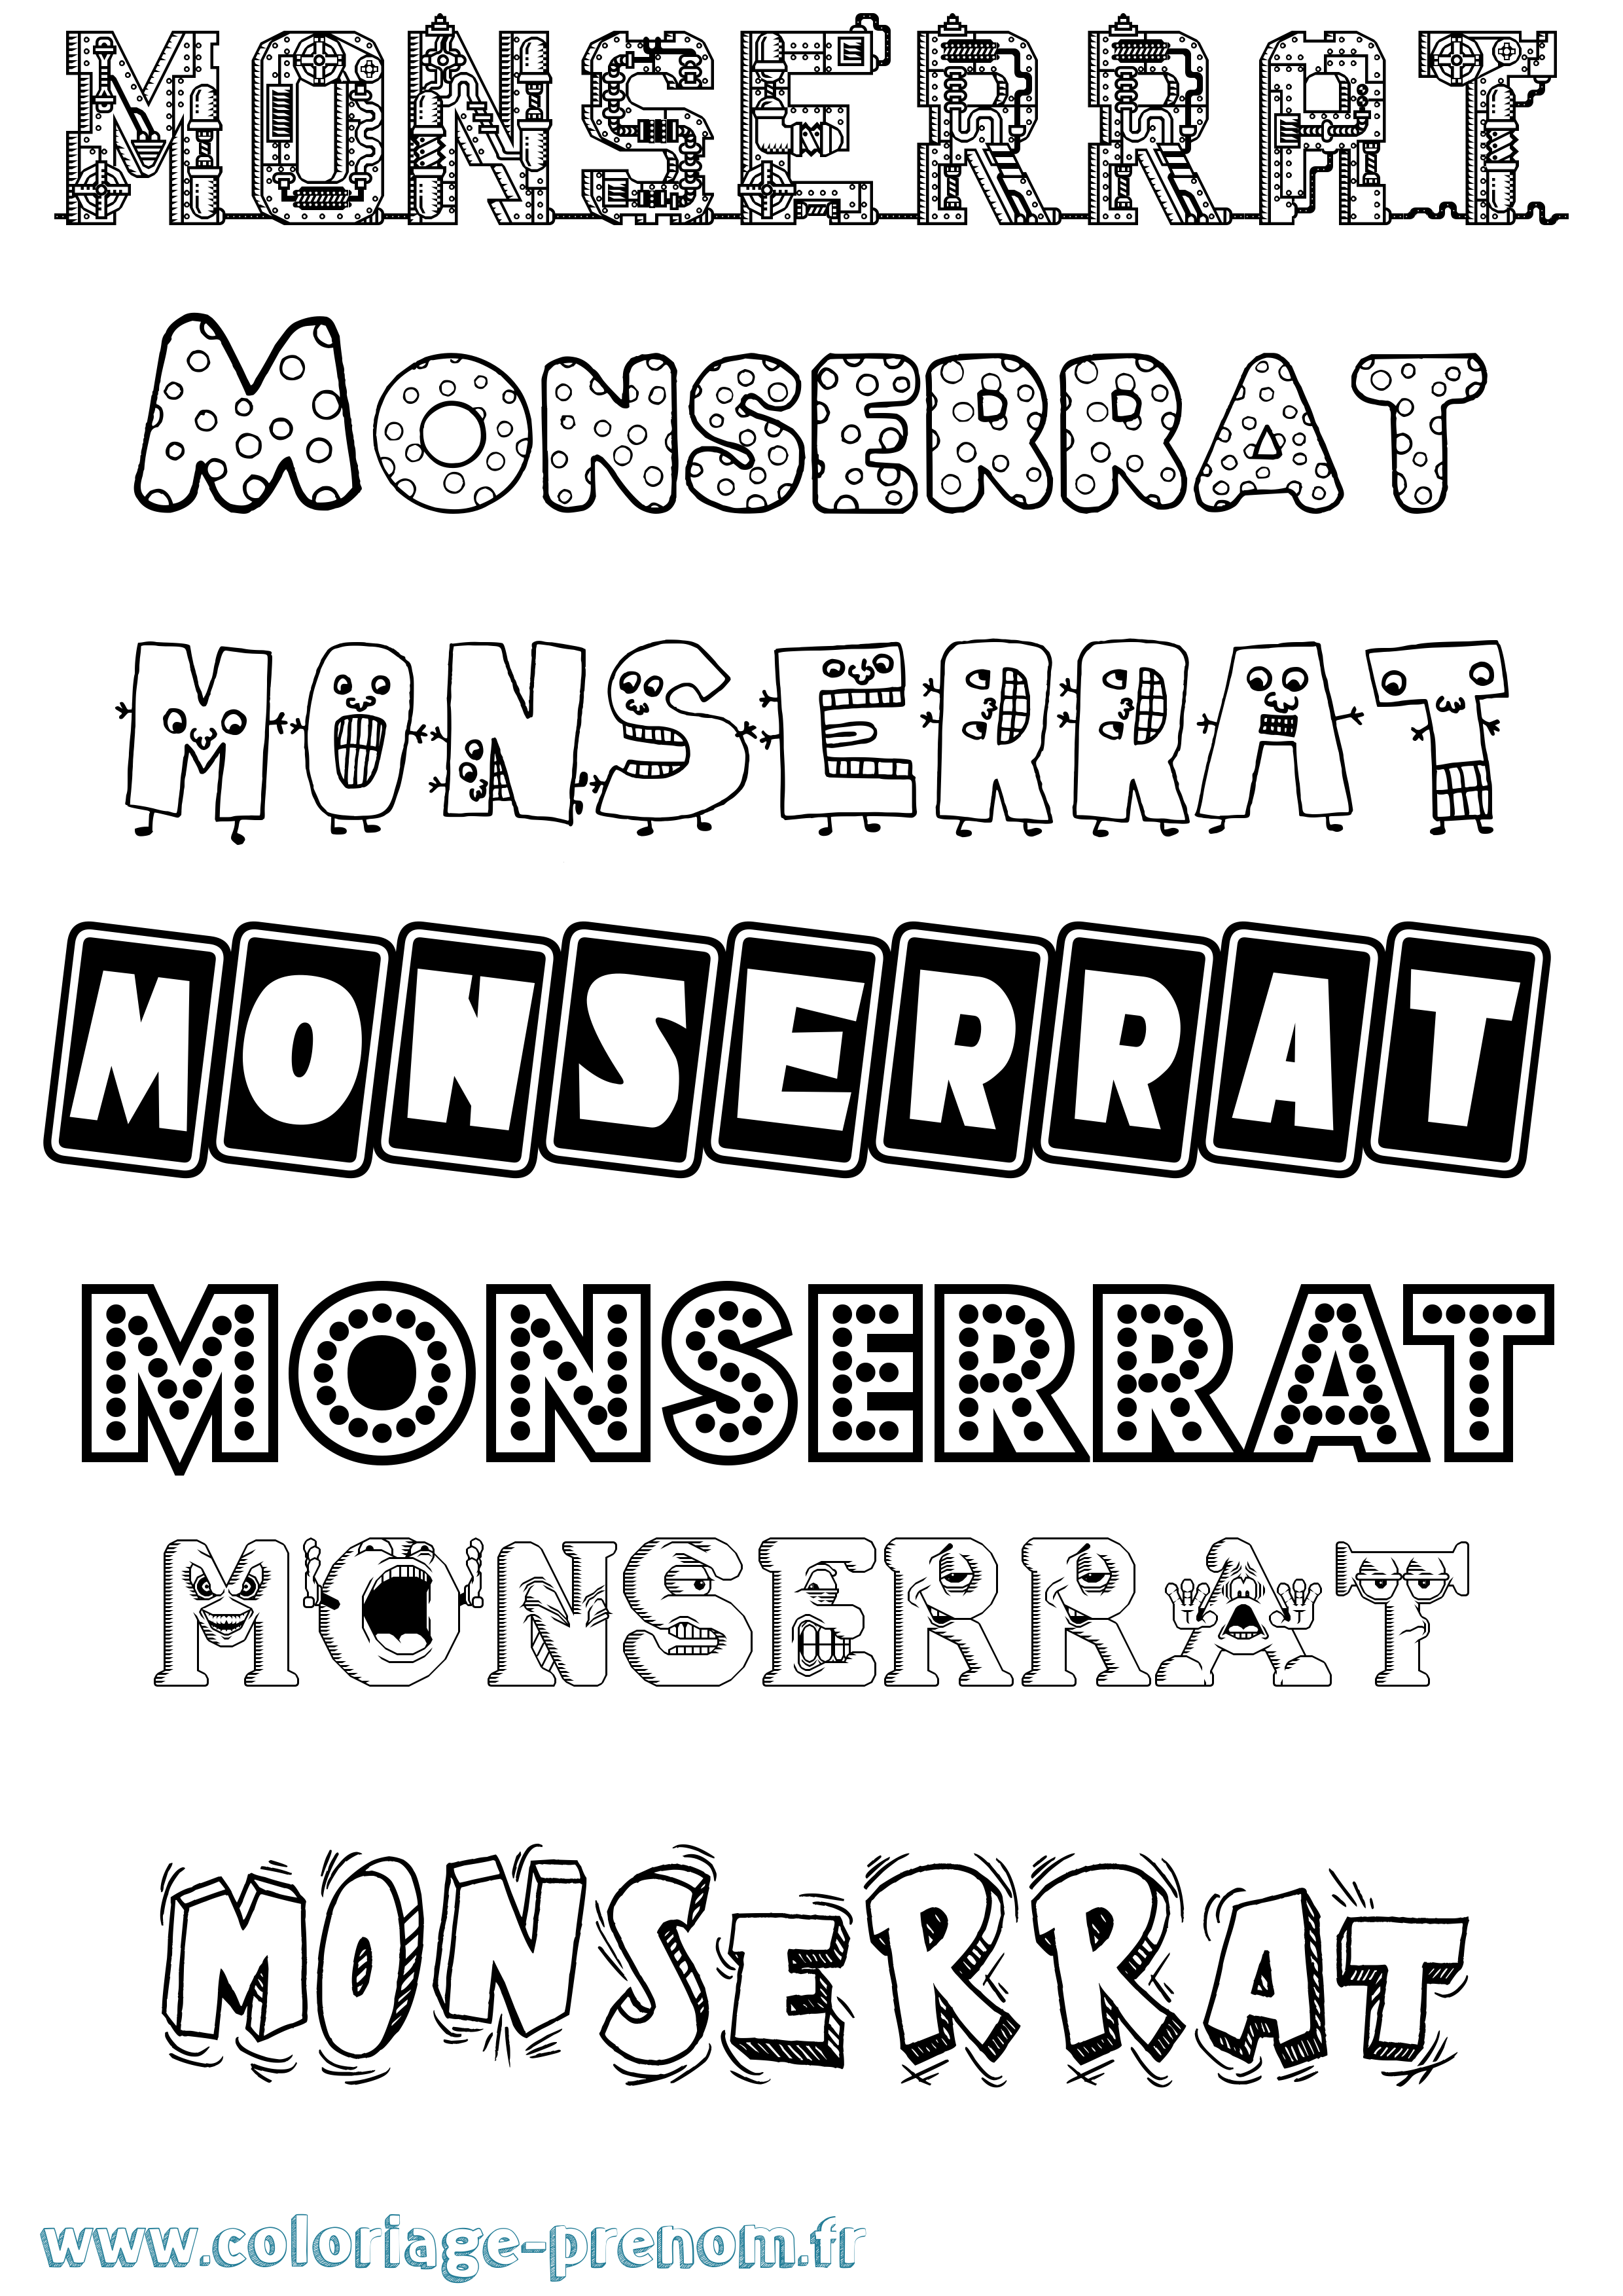 Coloriage prénom Monserrat Fun